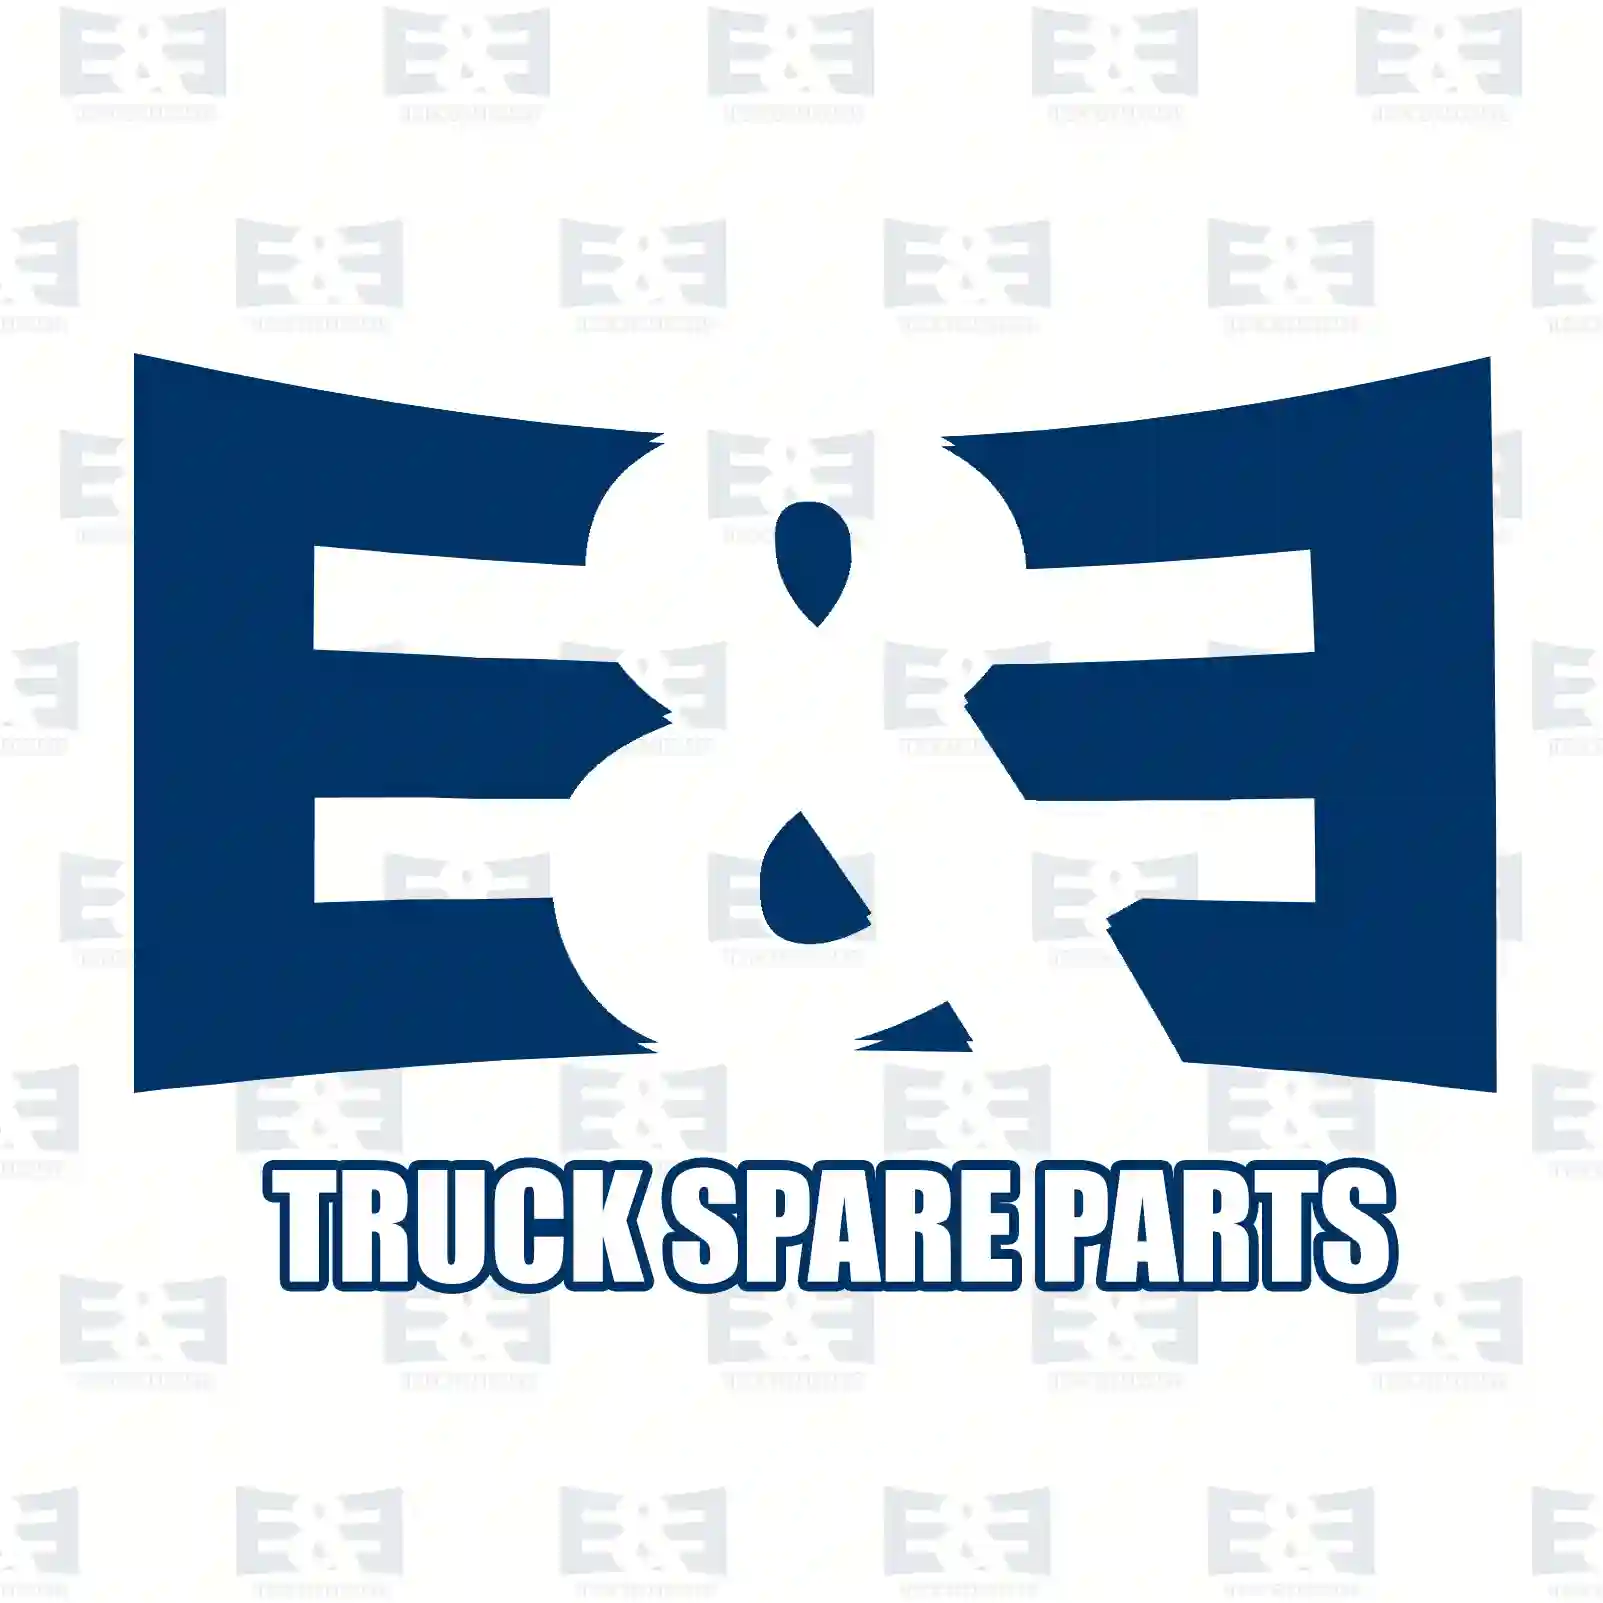 General overhaul kit, 2E2207512, 5001867442 ||  2E2207512 E&E Truck Spare Parts | Truck Spare Parts, Auotomotive Spare Parts General overhaul kit, 2E2207512, 5001867442 ||  2E2207512 E&E Truck Spare Parts | Truck Spare Parts, Auotomotive Spare Parts